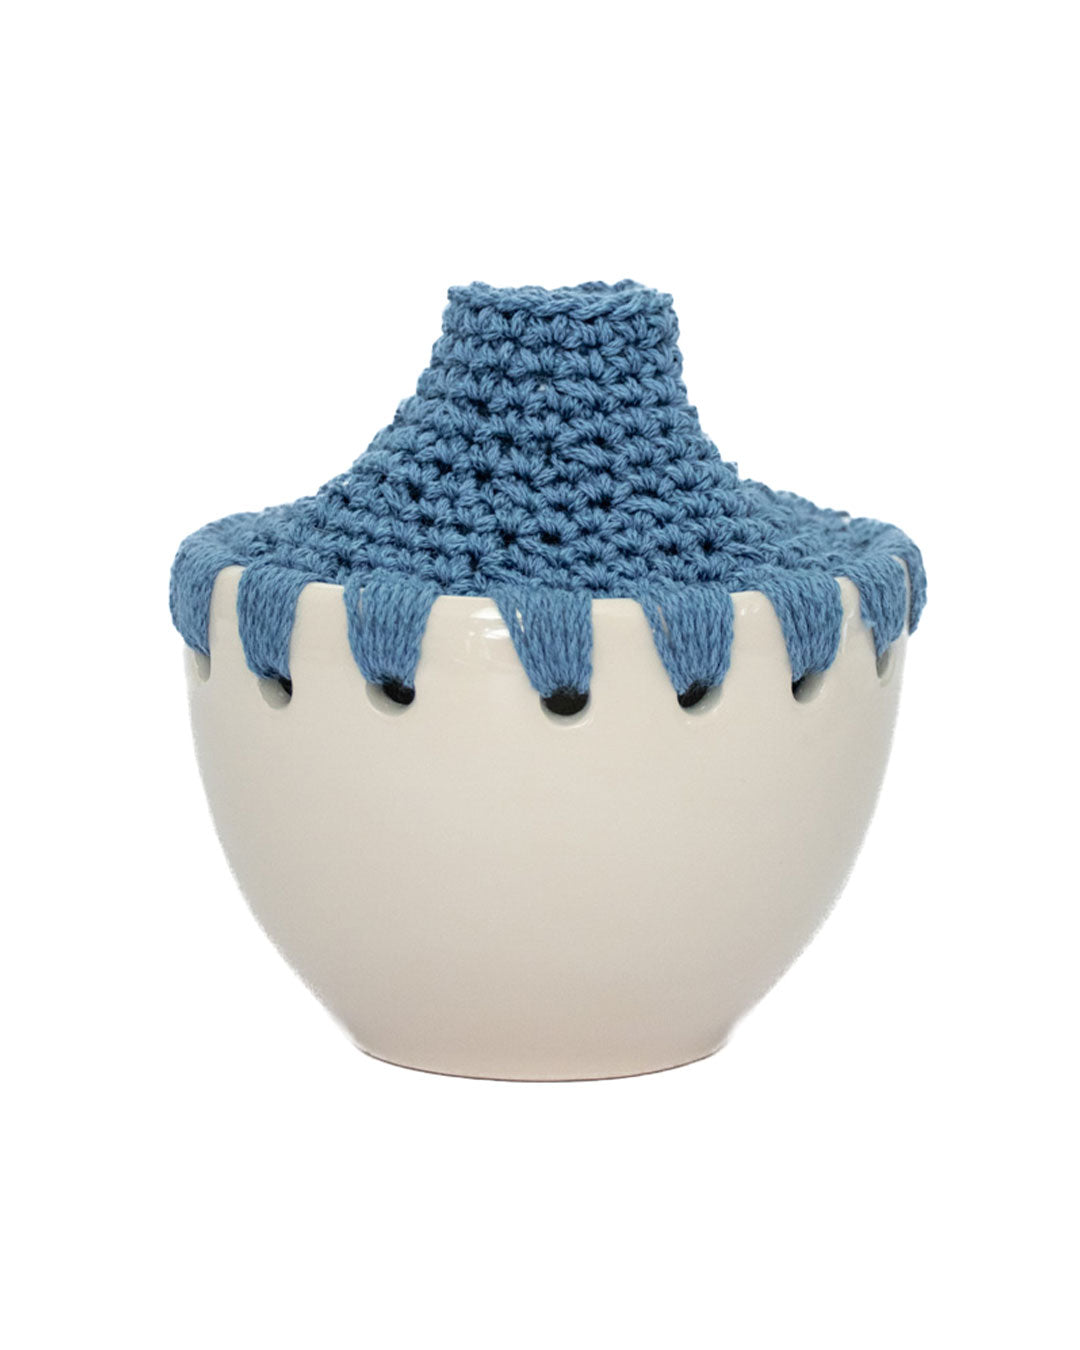 Ceramic Bowls - Set of 3